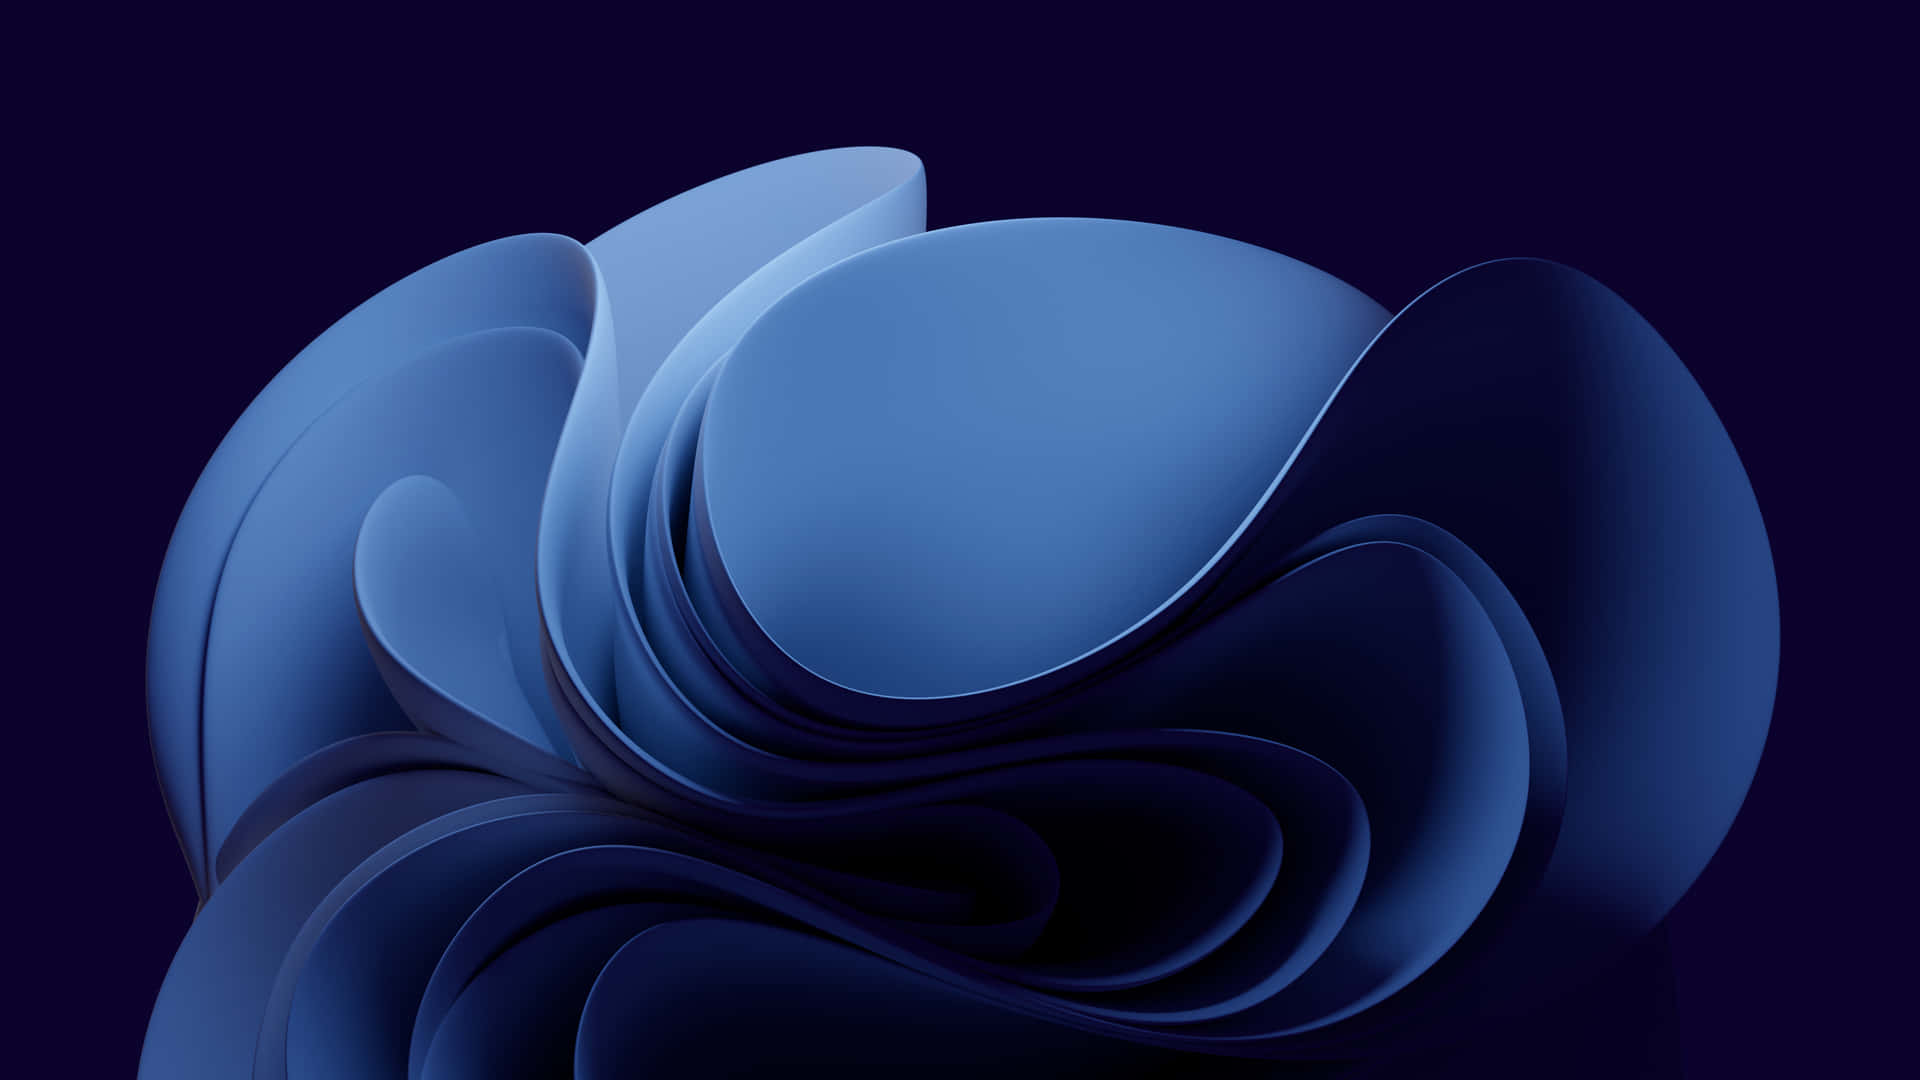 Abstract Blue Digital Illustration